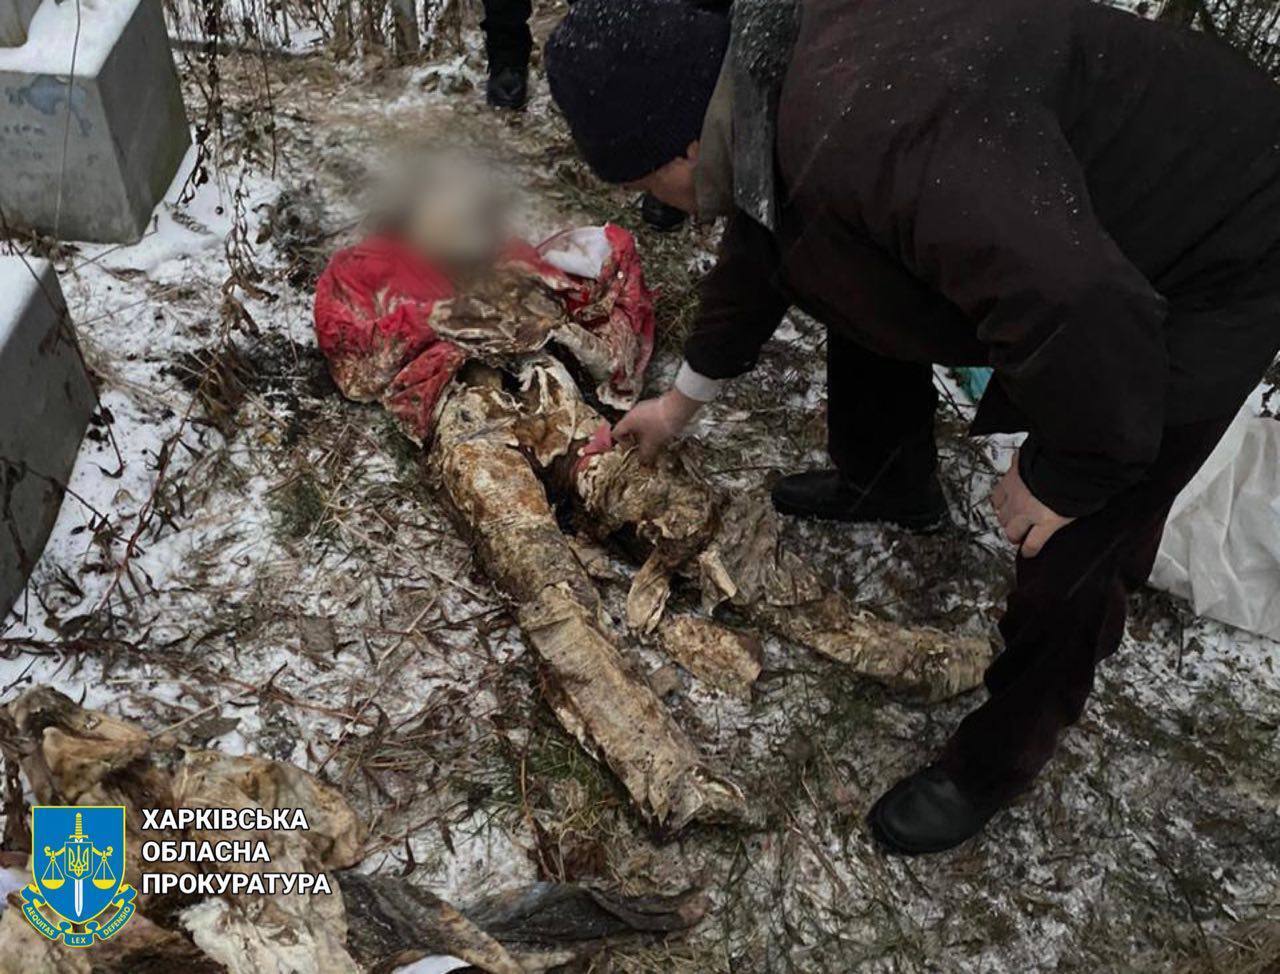 На Харківщині окупанти вбили чоловіка з донькою на їхньому подвір'ї: поліція ексгумувала тіла